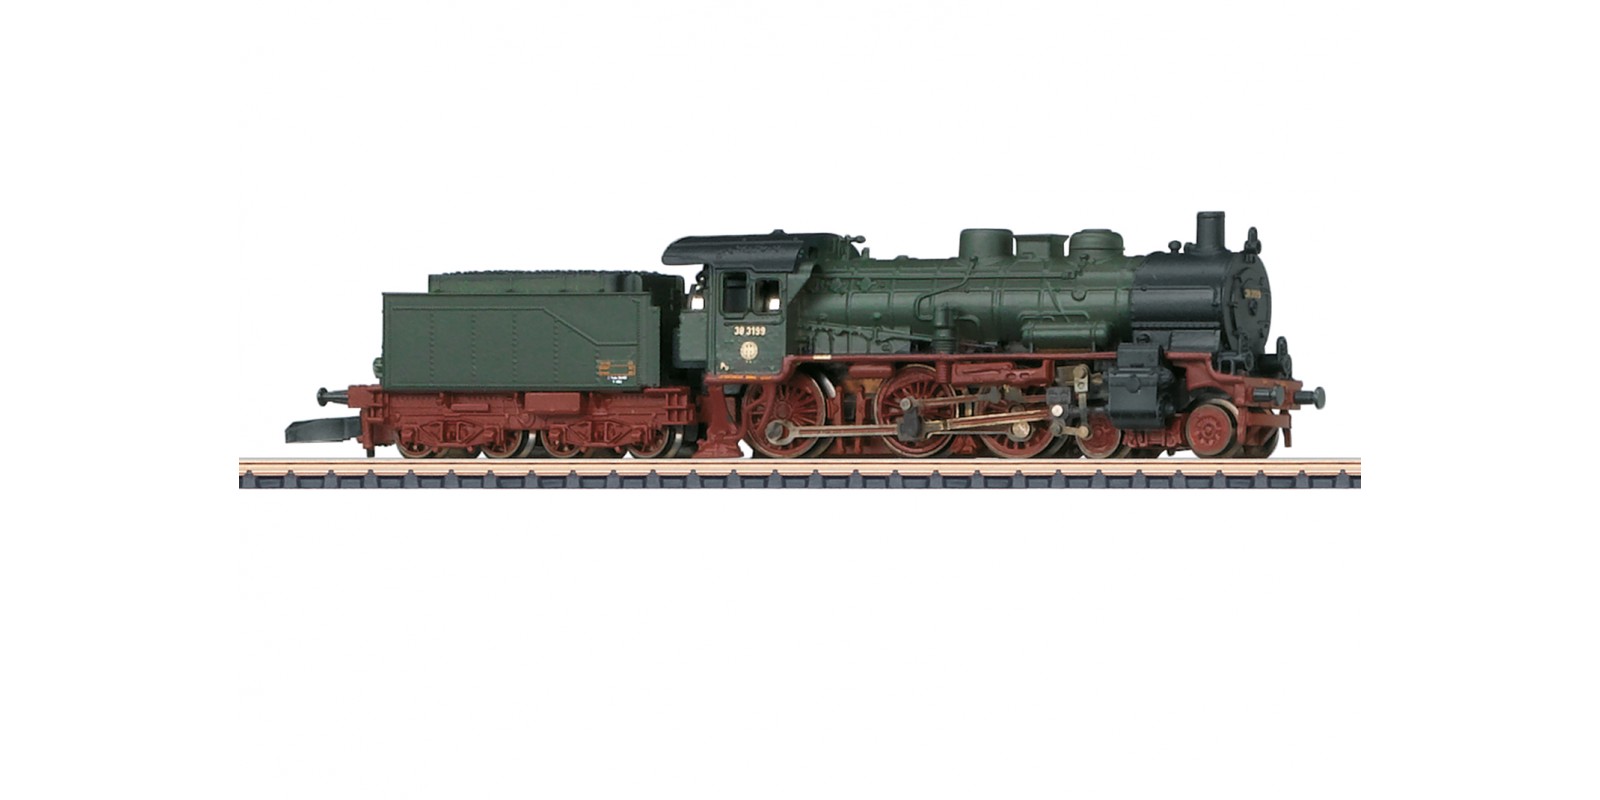 88993 SEH Steam Locomotive, Road Number 38 3199